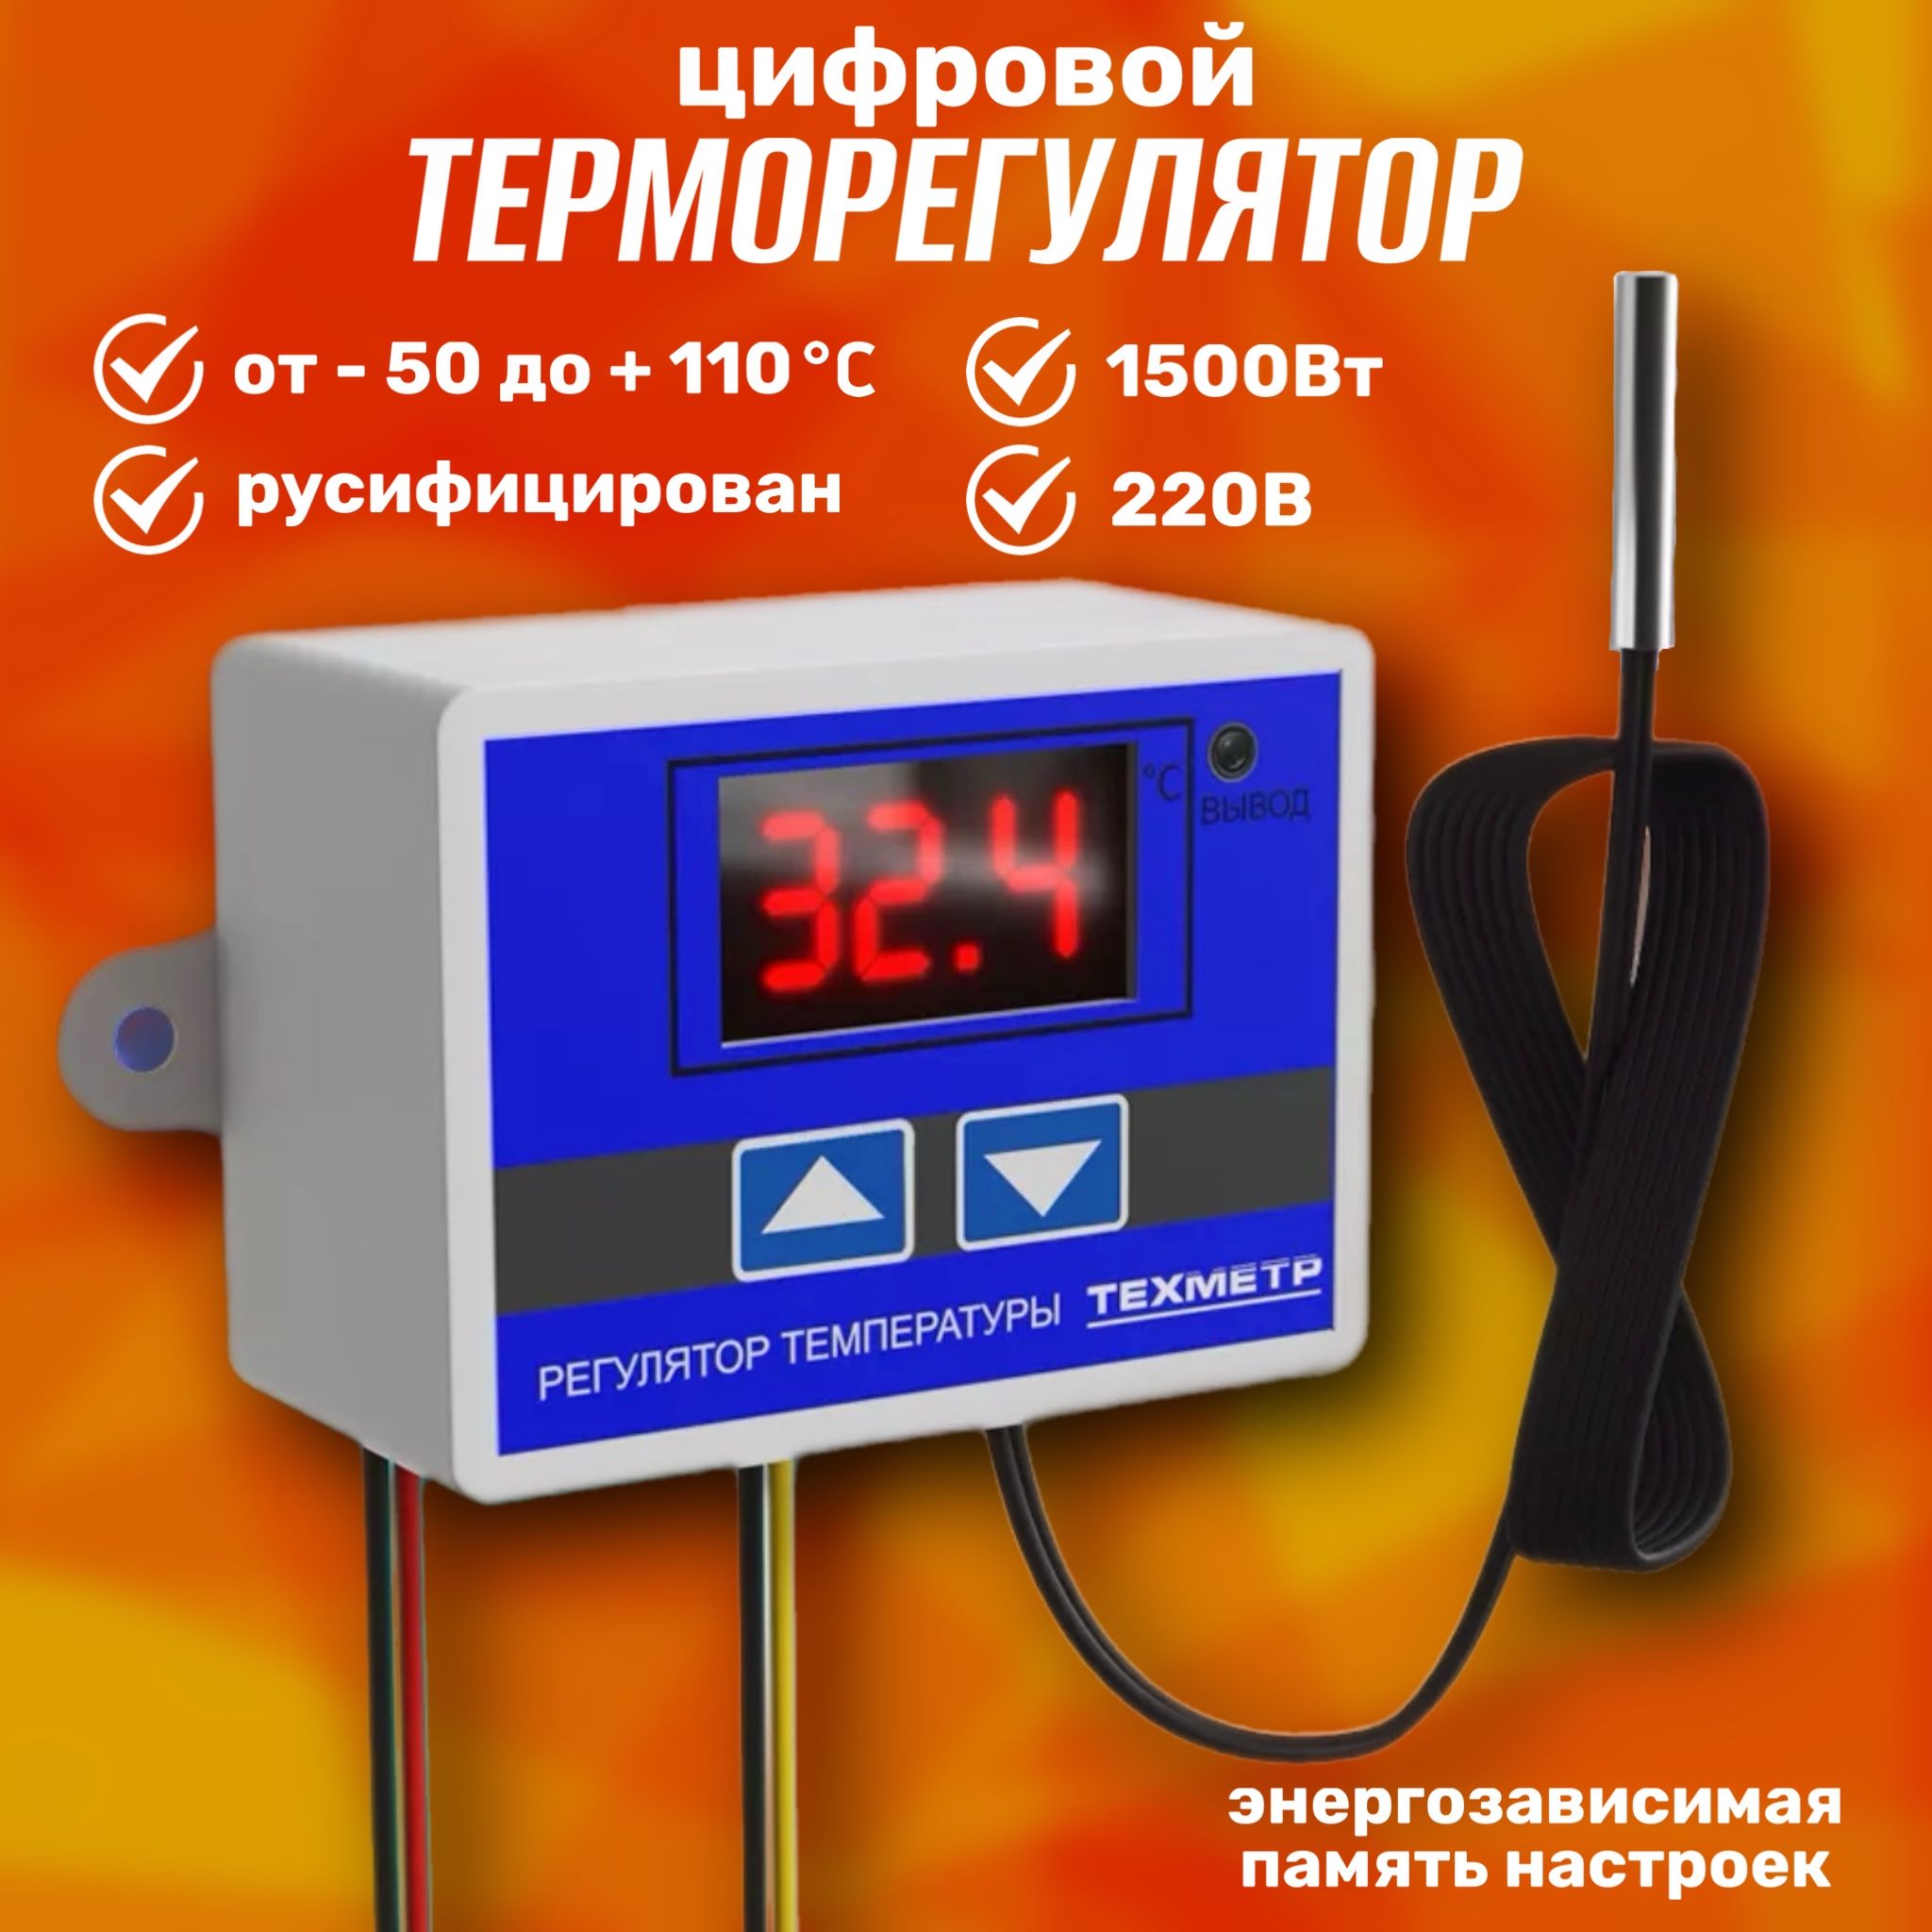 ТерморегулятортермостатконтроллертемпературыТЕХМЕТРXH-W3001110-220В1500Вт-50+110СTRW3001(Синий)